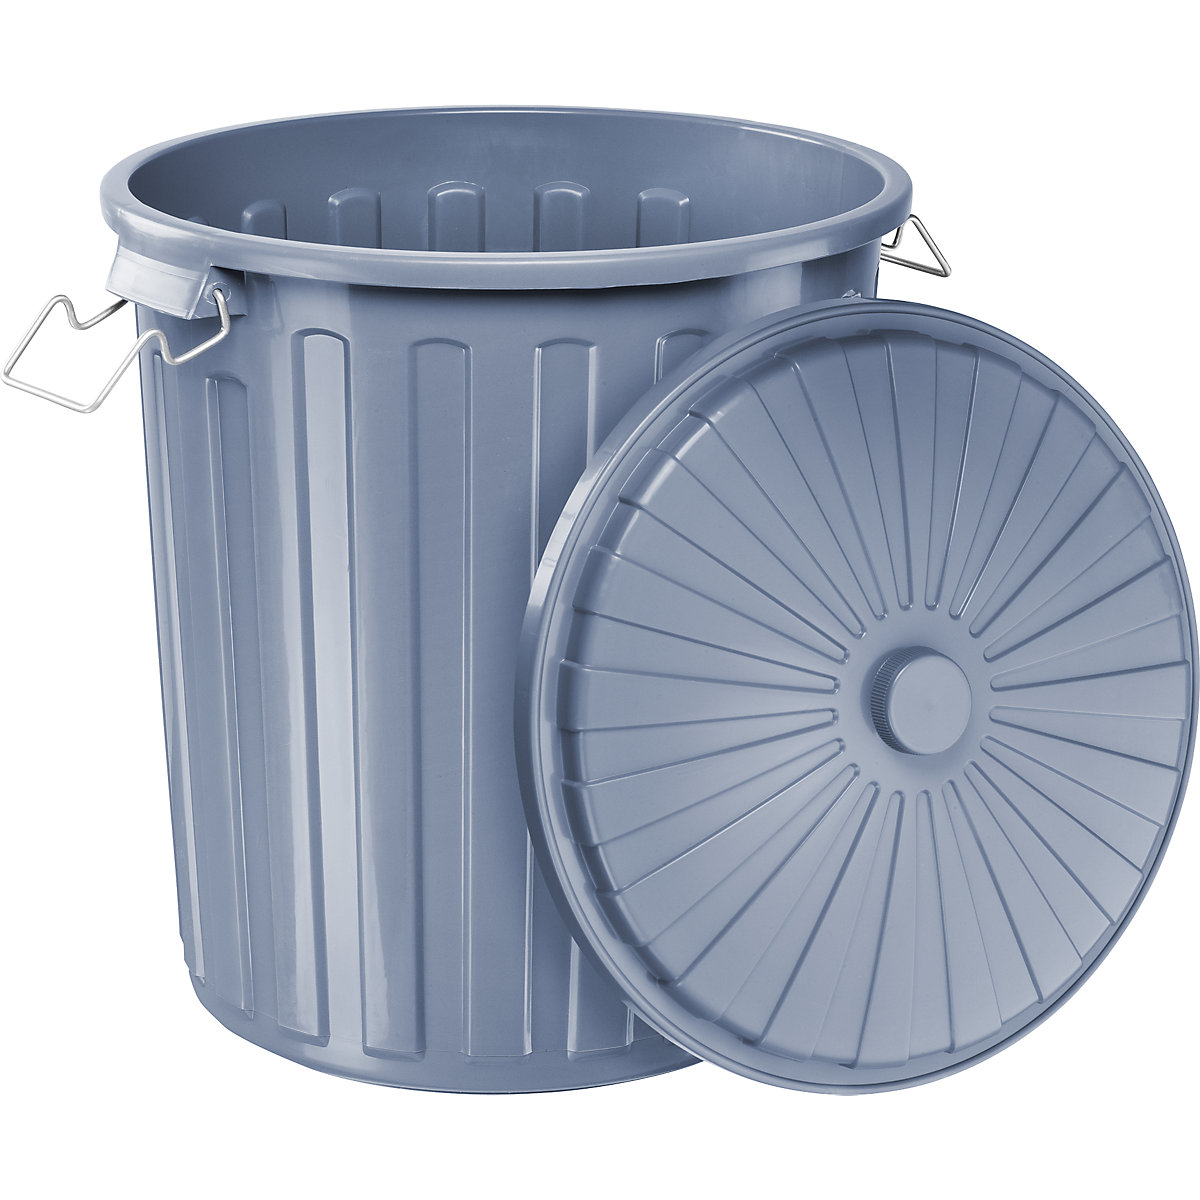 Contentor do lixo com tampa (Imagem do produto 2)-1